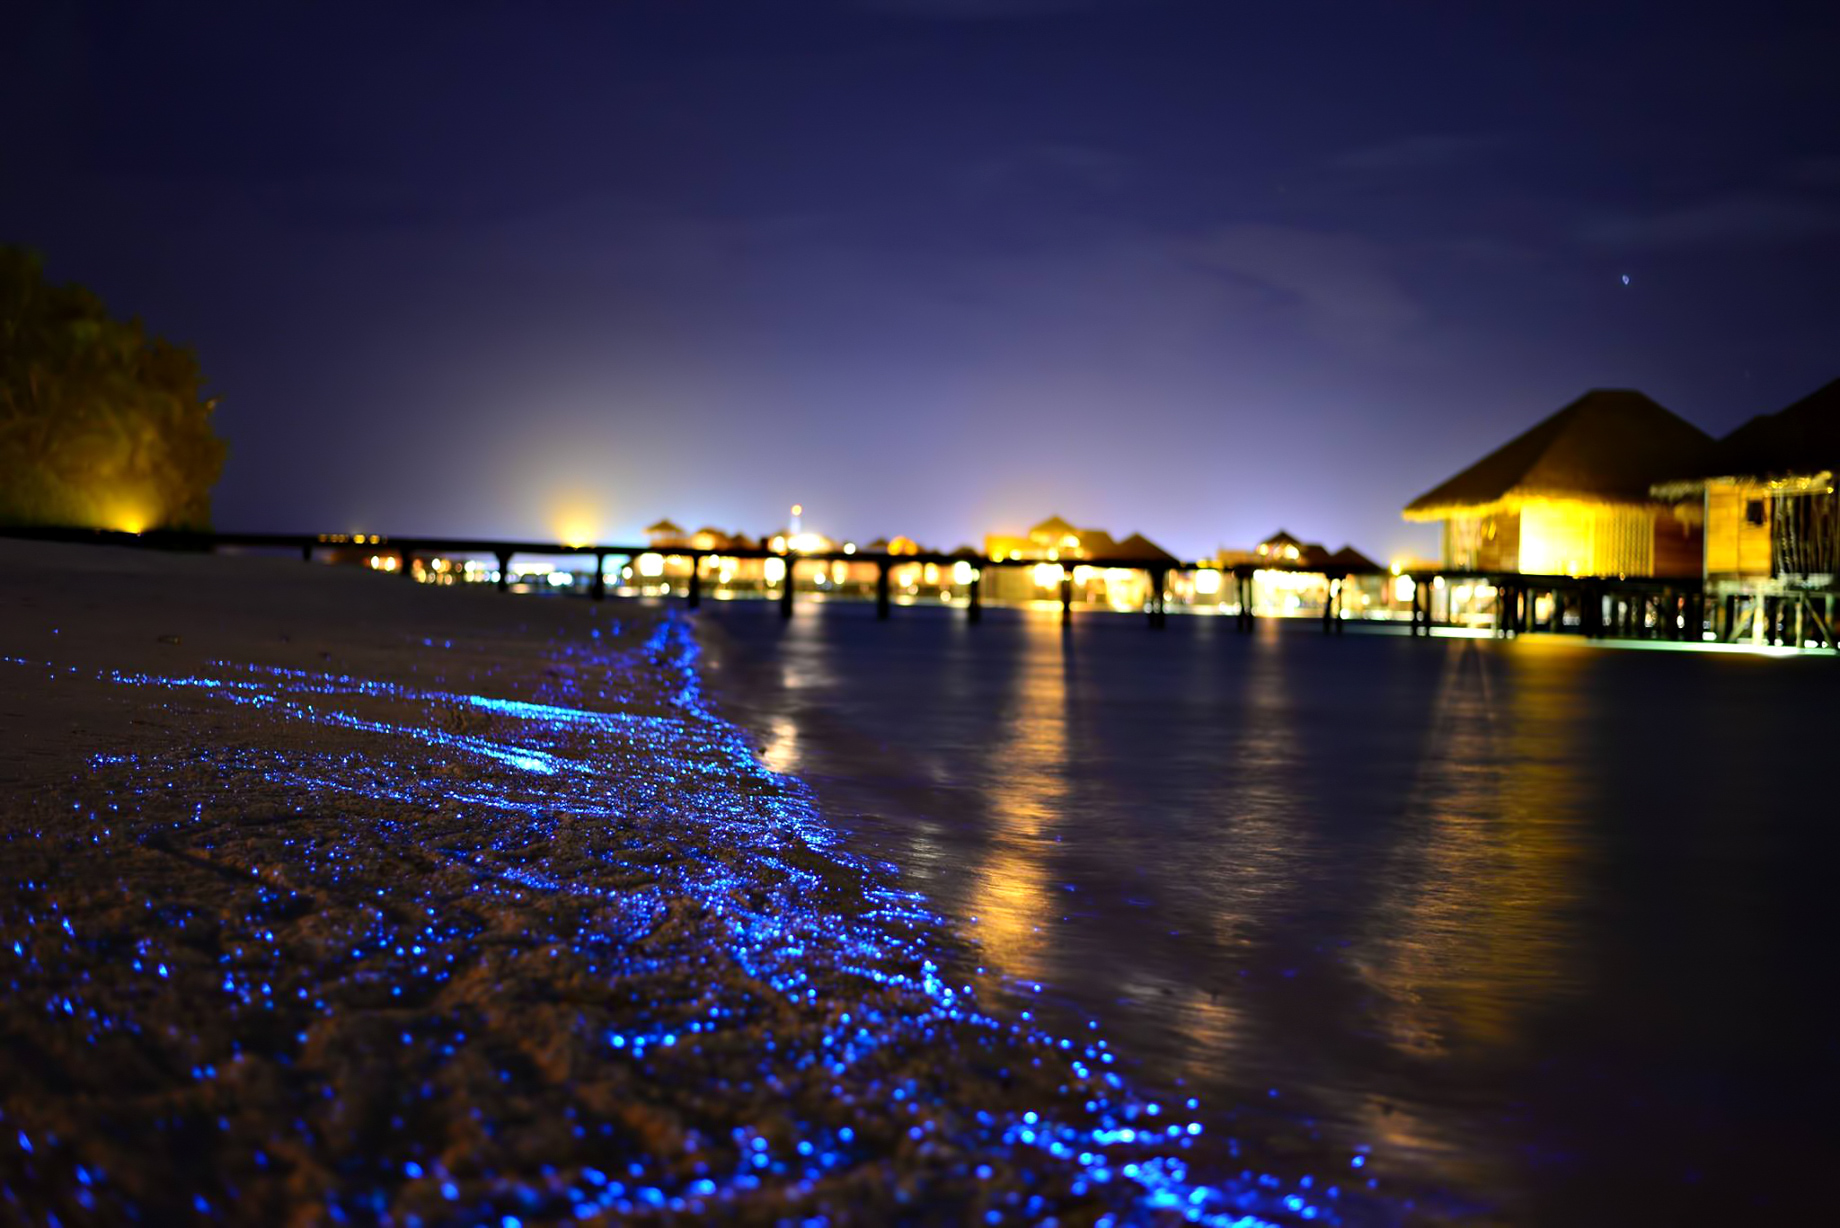 Gili Lankanfushi Resort – North Male Atoll, Maldives – Bioluminescent Beach Night View